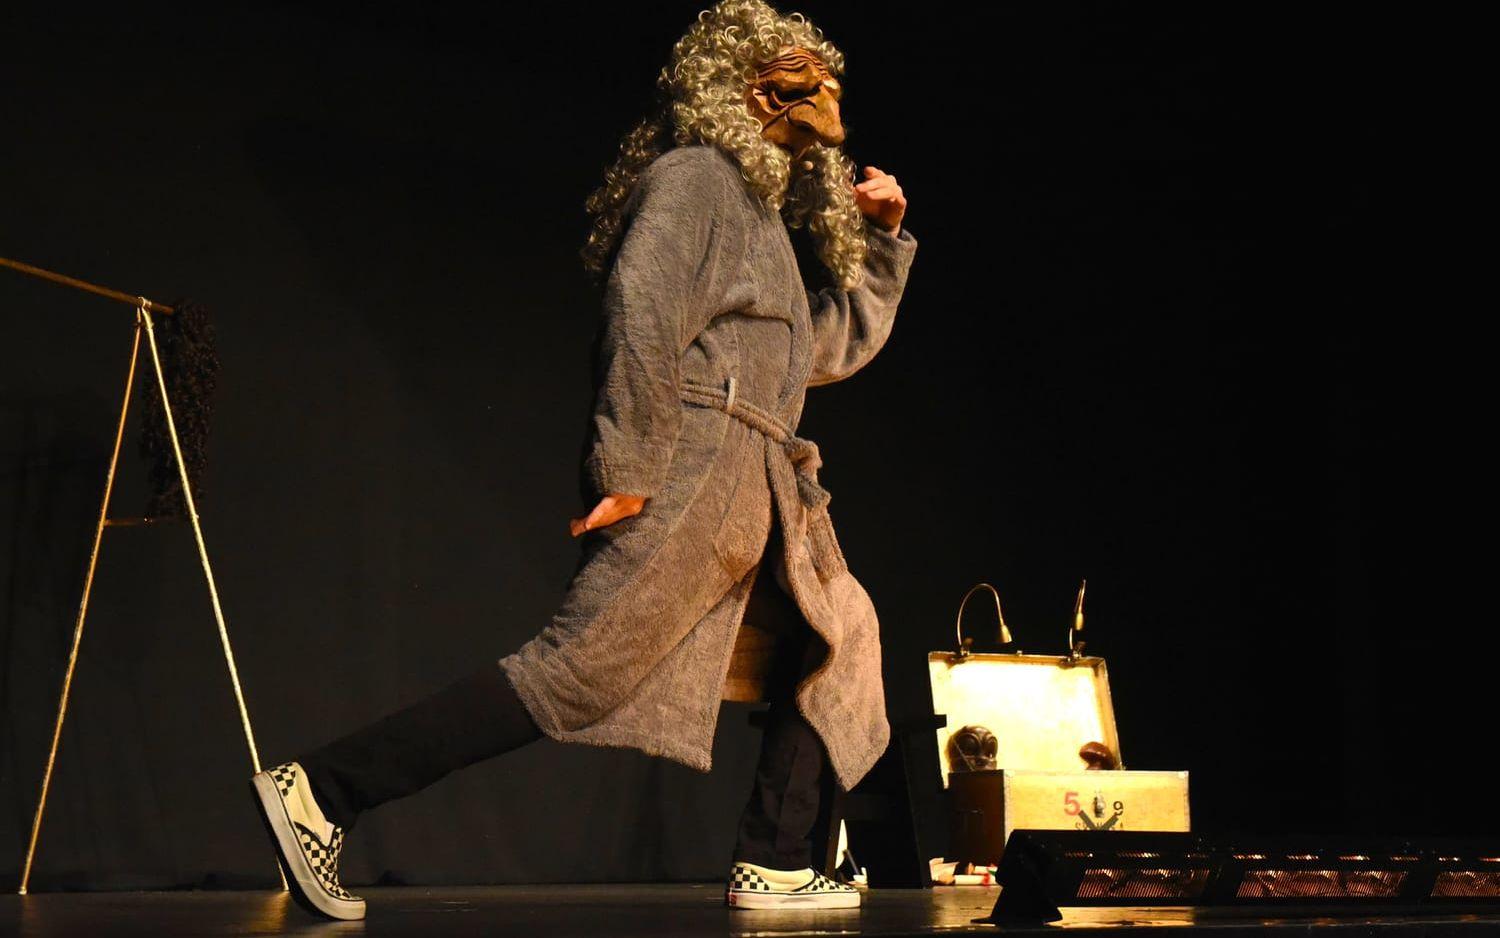 Med commedia dell'arte-masken Pantalone blir Lasse Beischer en gammal elak gubbe, som passar i Molières pjäser (men här försöker imponera på en gyminstruktör). Bild: Martin Erlandsson